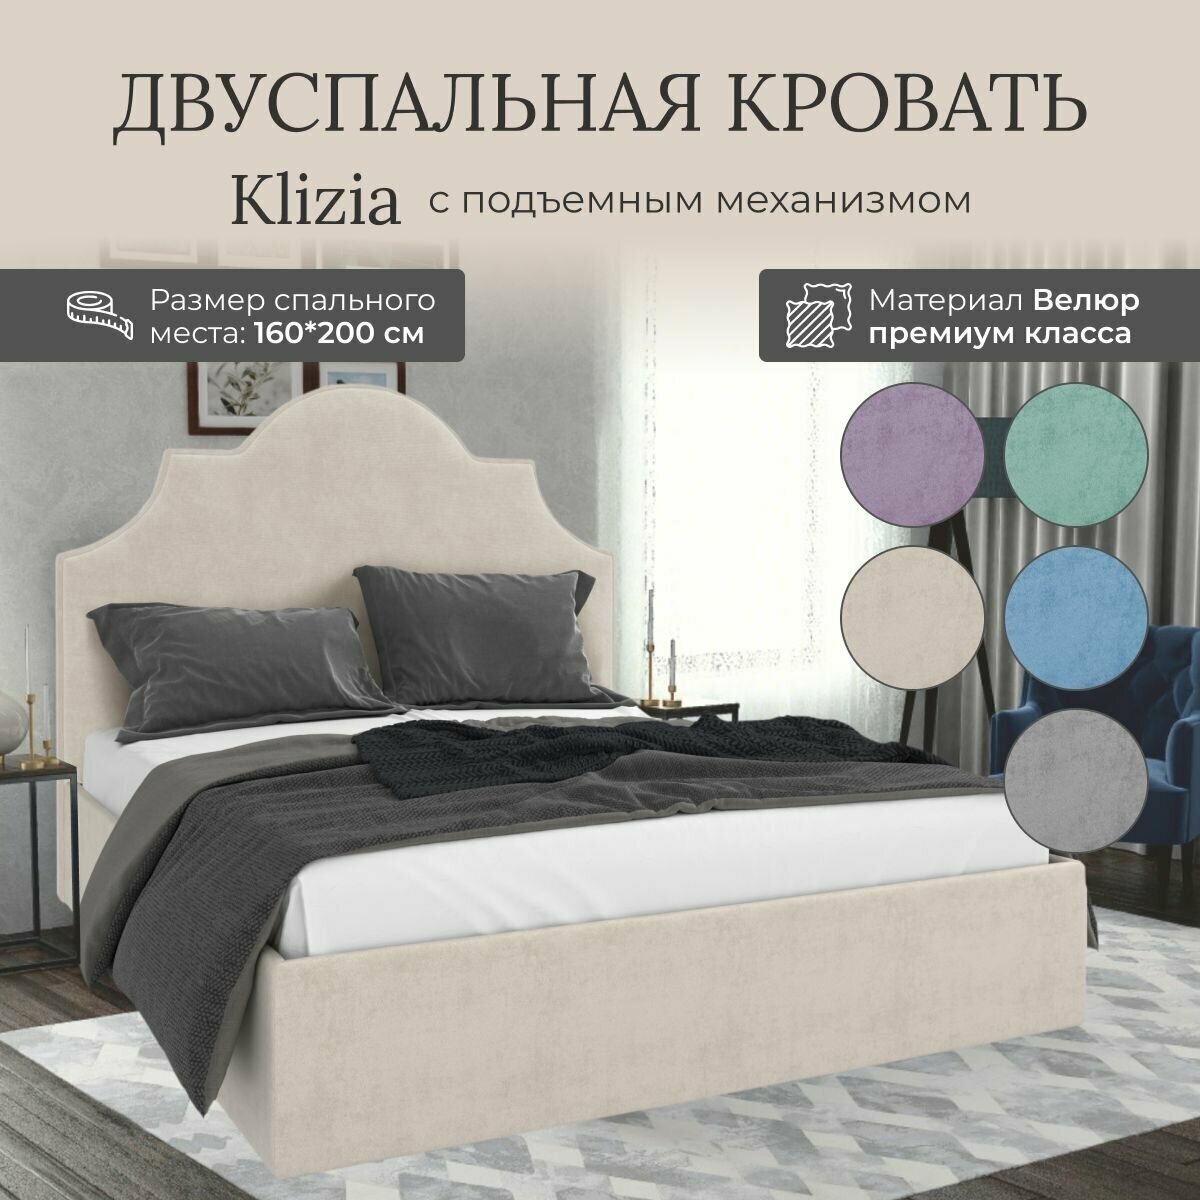 Кровать с подъемным механизмом Luxson Klizia двуспальная размер 160х200